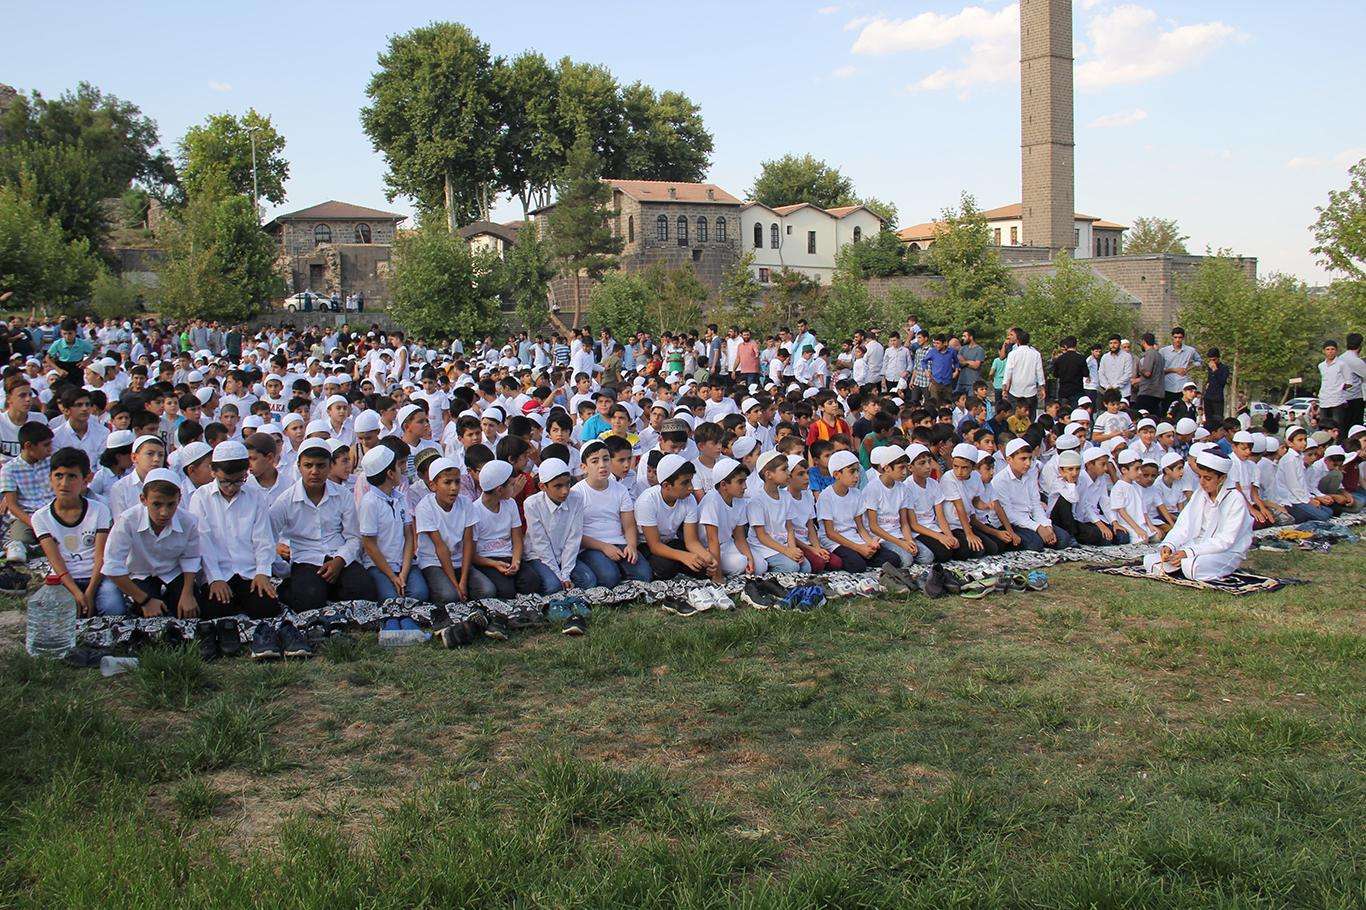 Hayat Namazla Güzeldir etkinliğinin finali Diyarbakır'da yapılacak